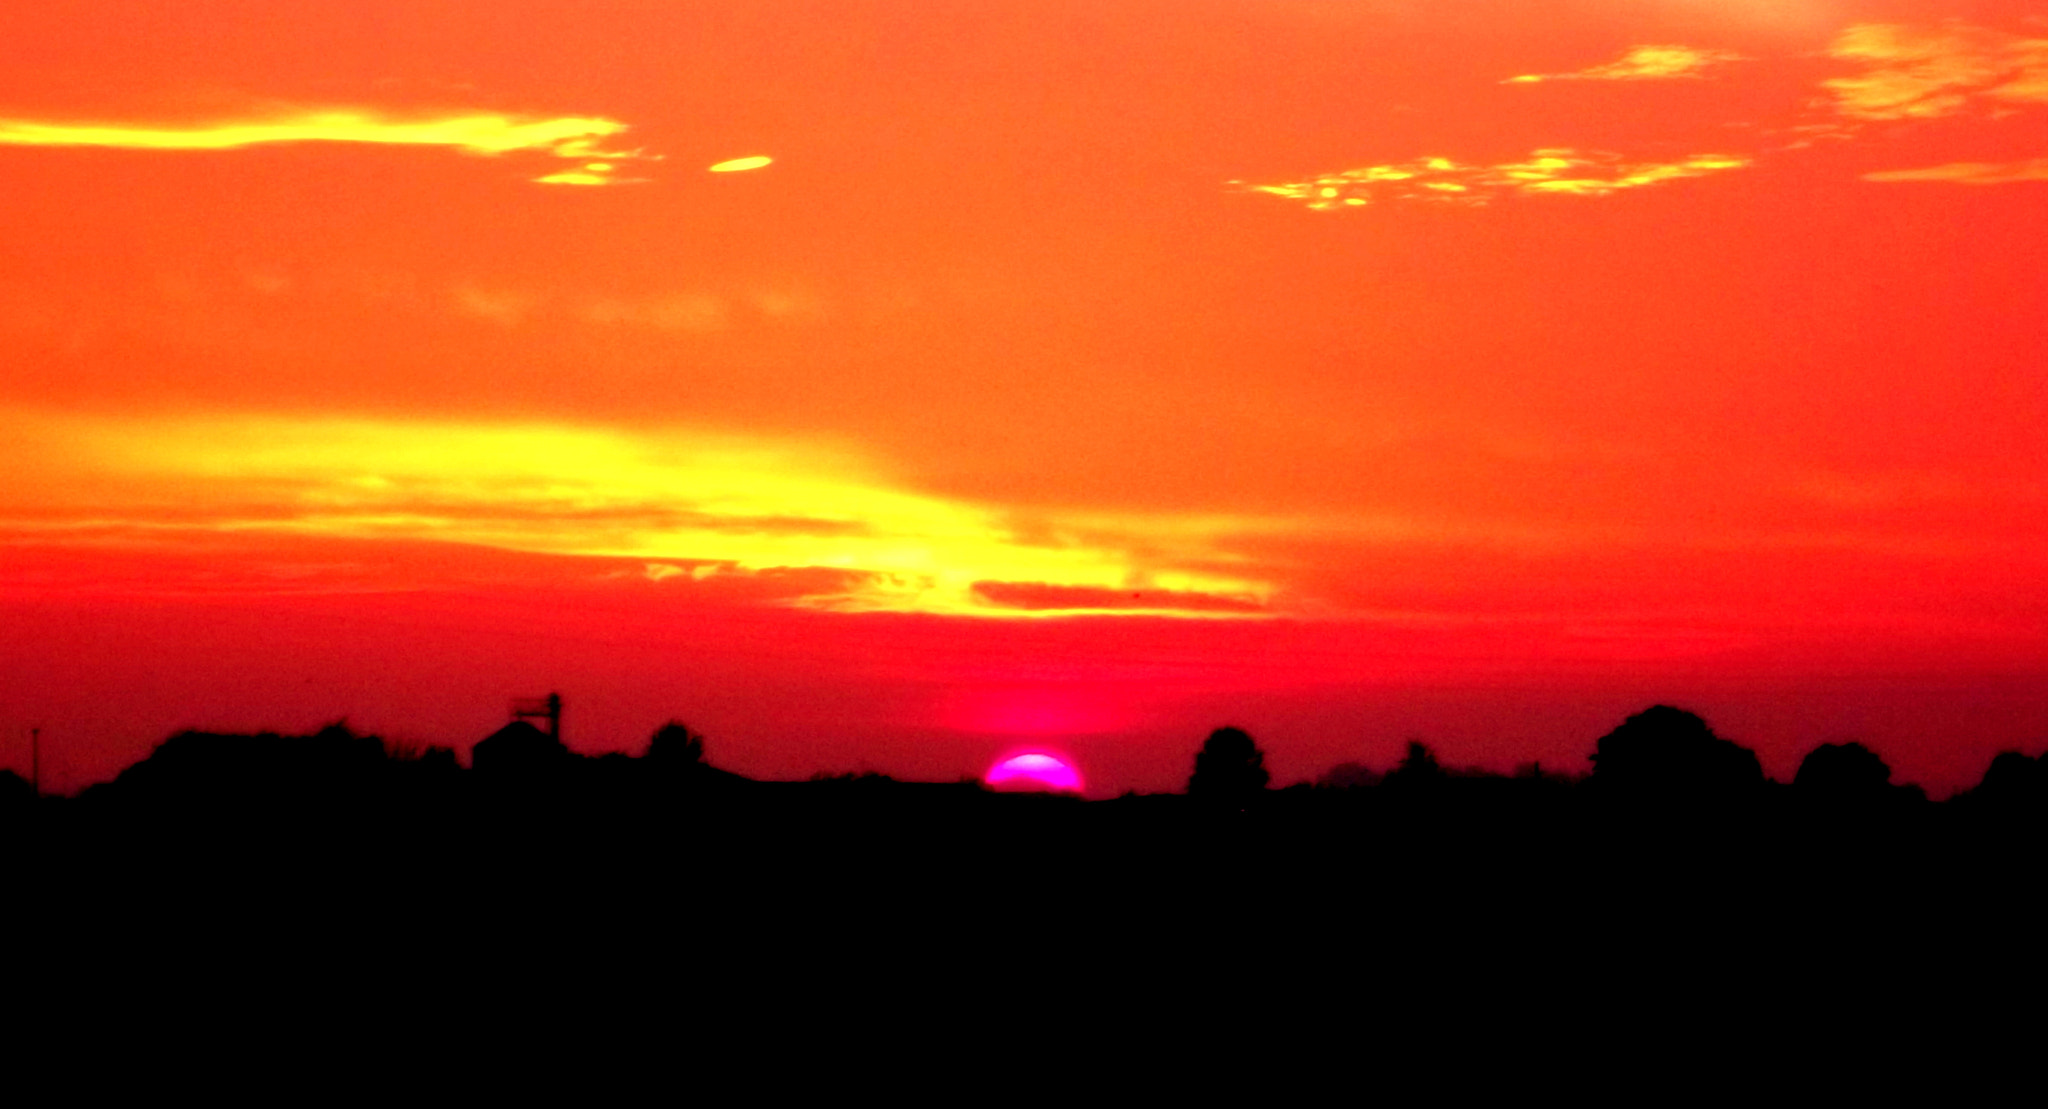 Fujifilm FinePix JX250 sample photo. Meraviglioso tramonto con cielo e sole super. photography